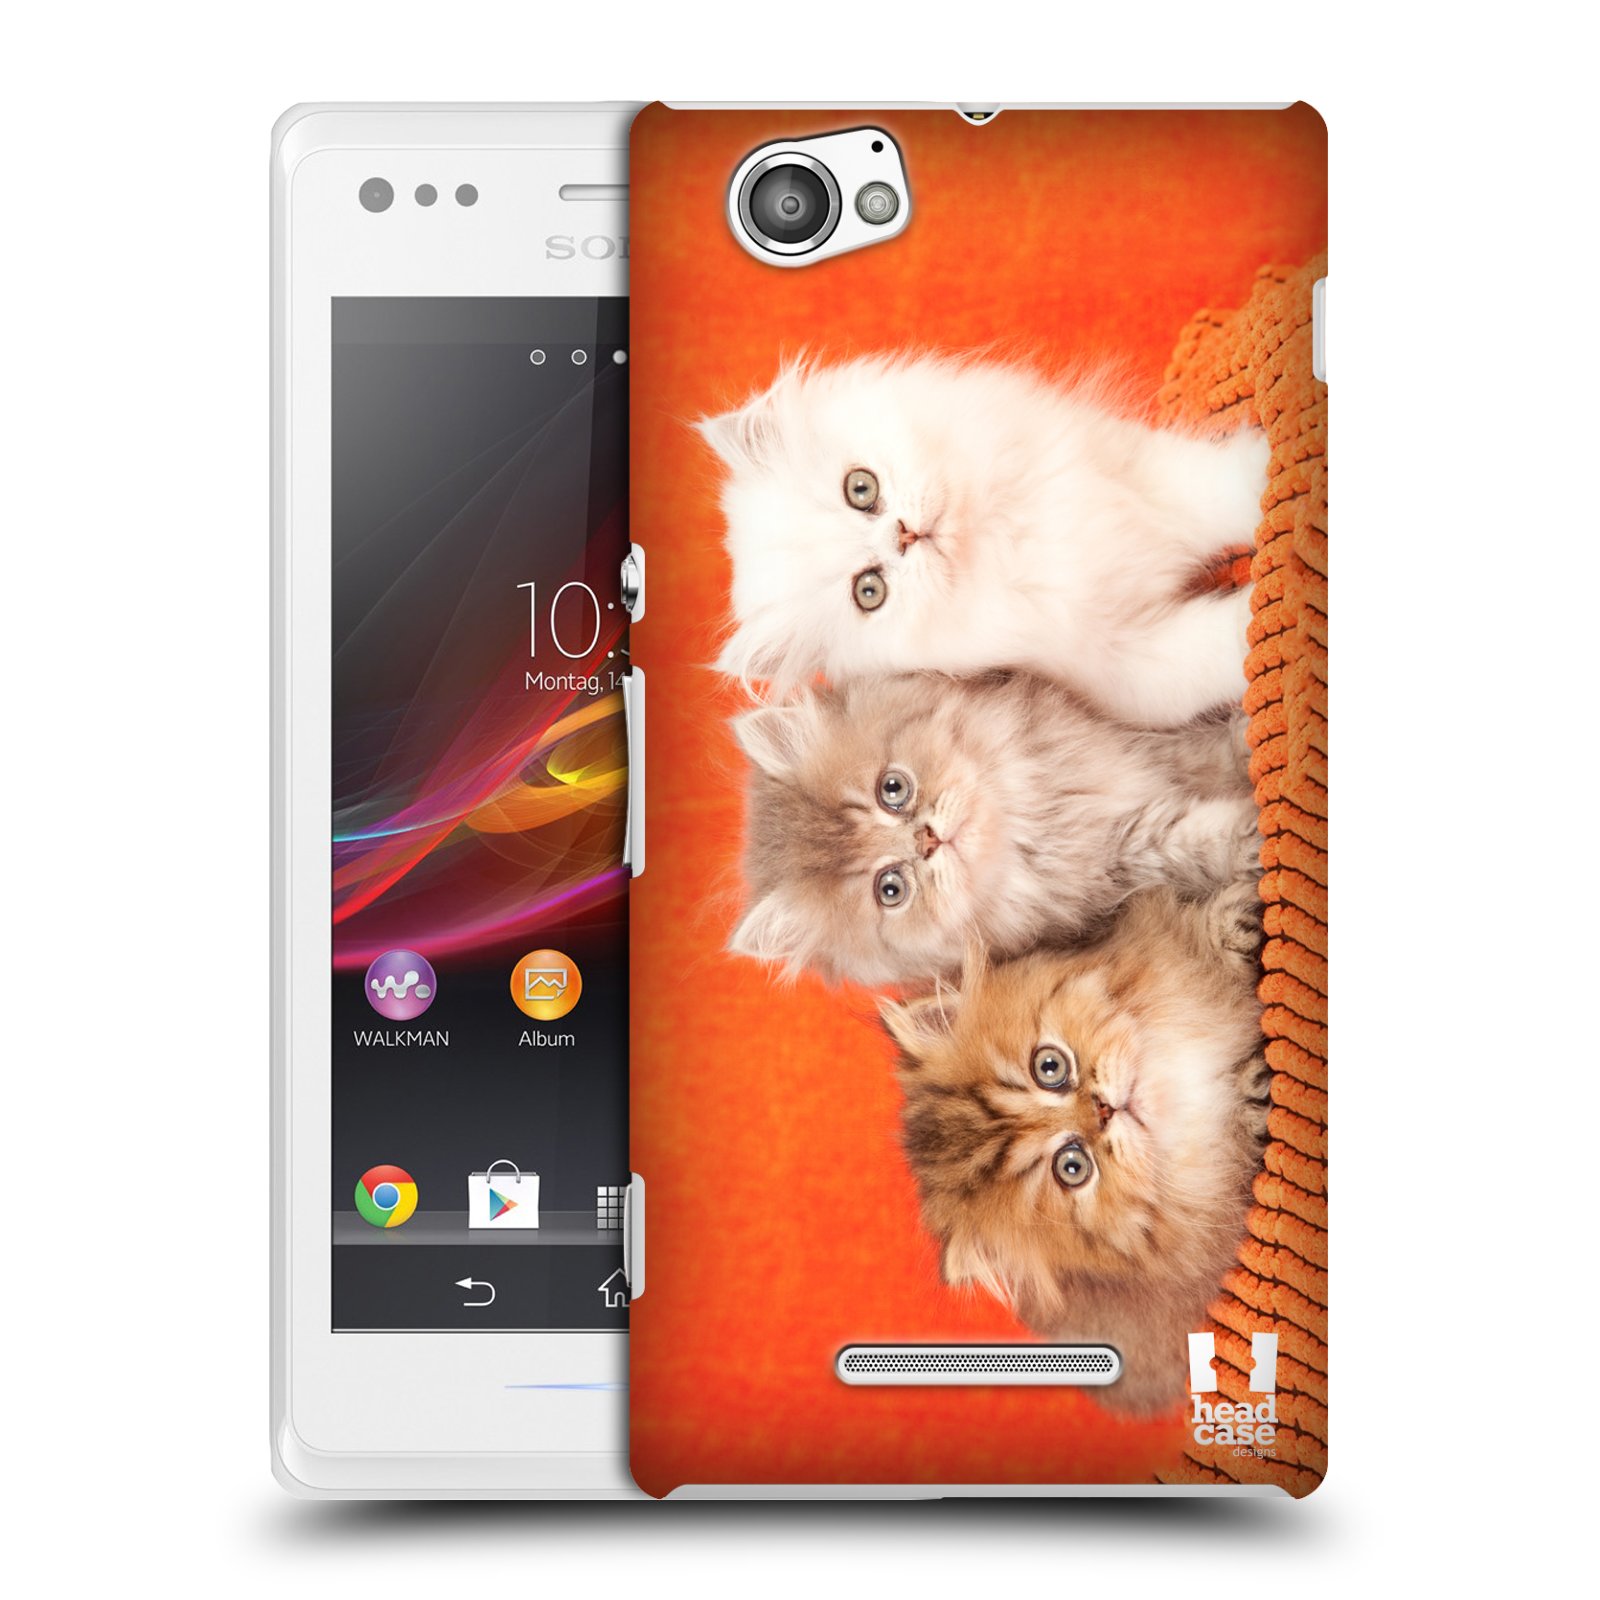 HEAD CASE plastový obal na mobil Sony Xperia M vzor Kočičky koťata foto 3 kočky